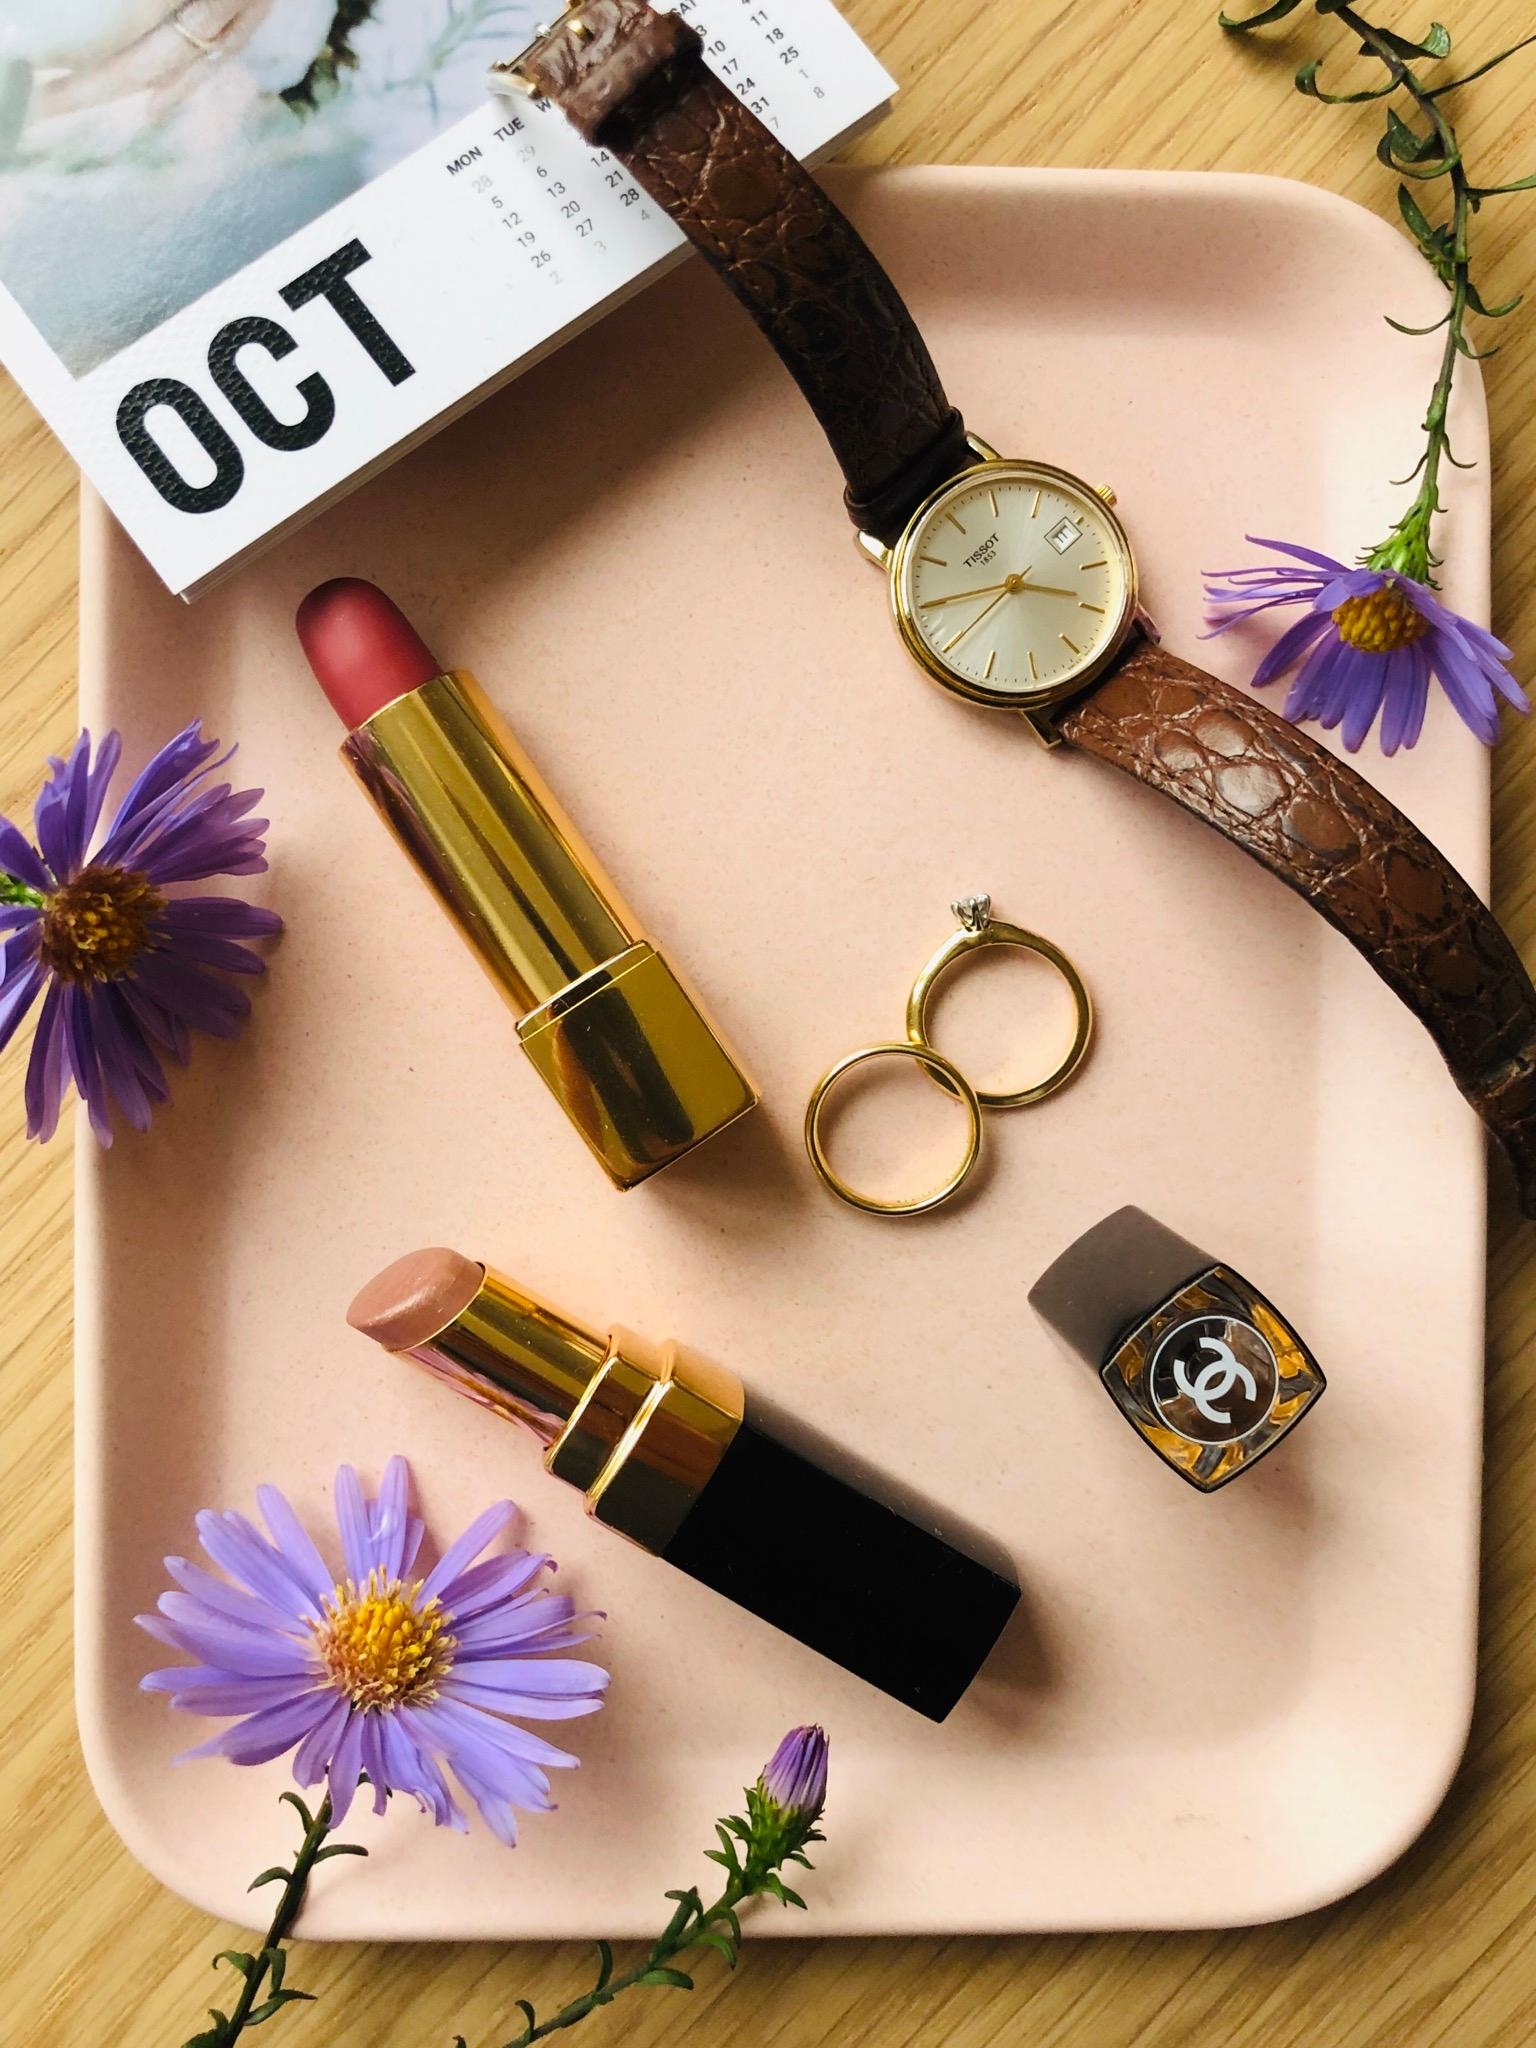 Meine #lippenstift Farben im Oktober 💄 #beautychallenge #chanel